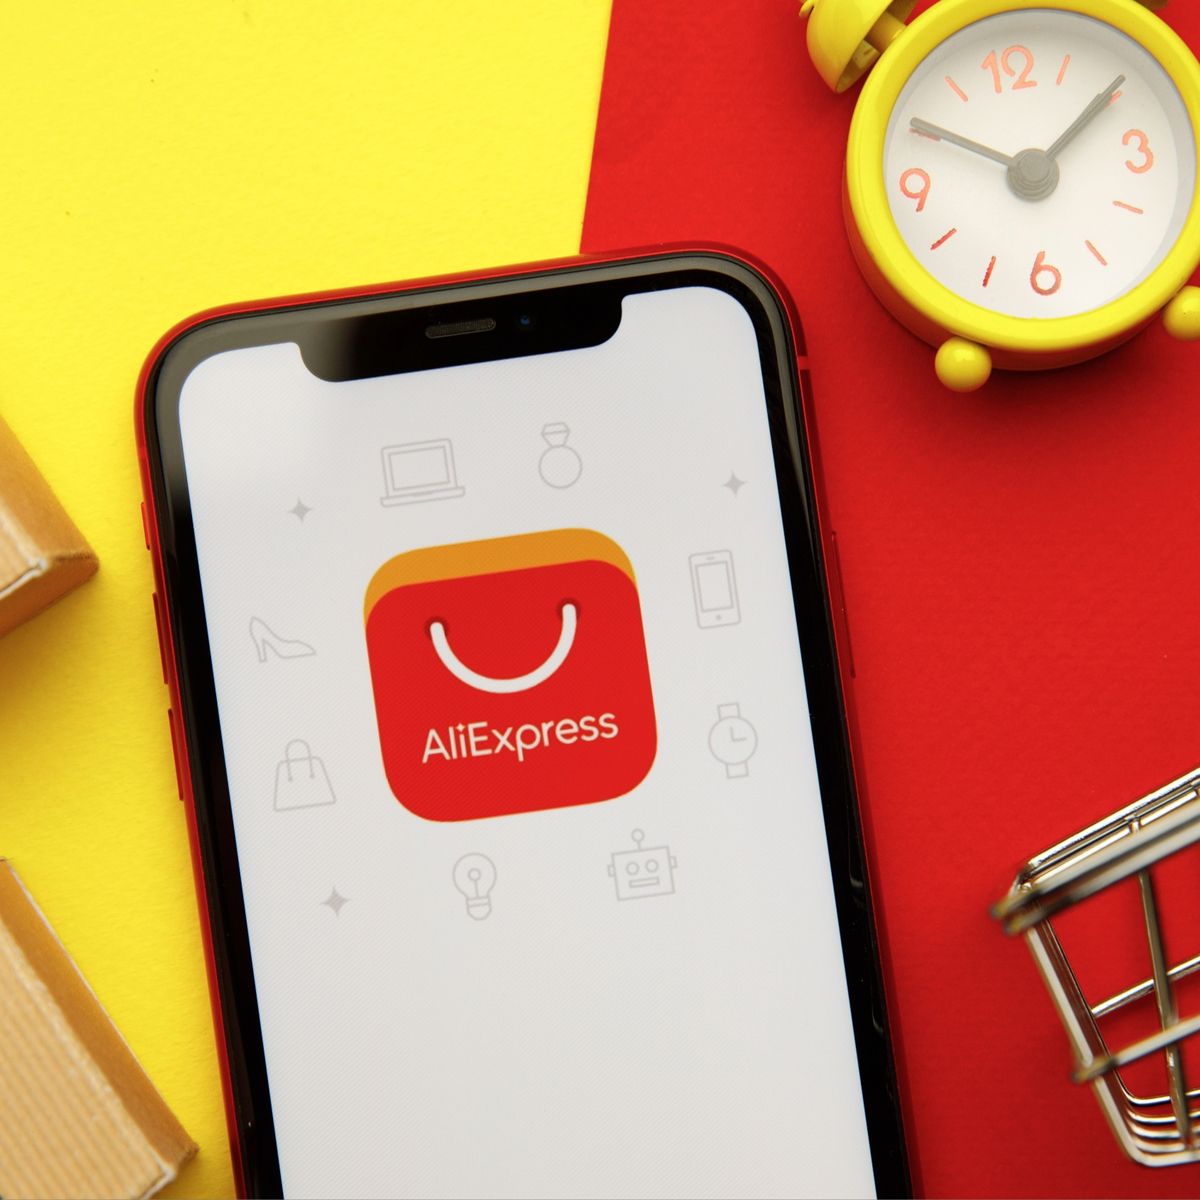 Descarga ahora la app de AliExpress, ¡3 productos por solo 0,99